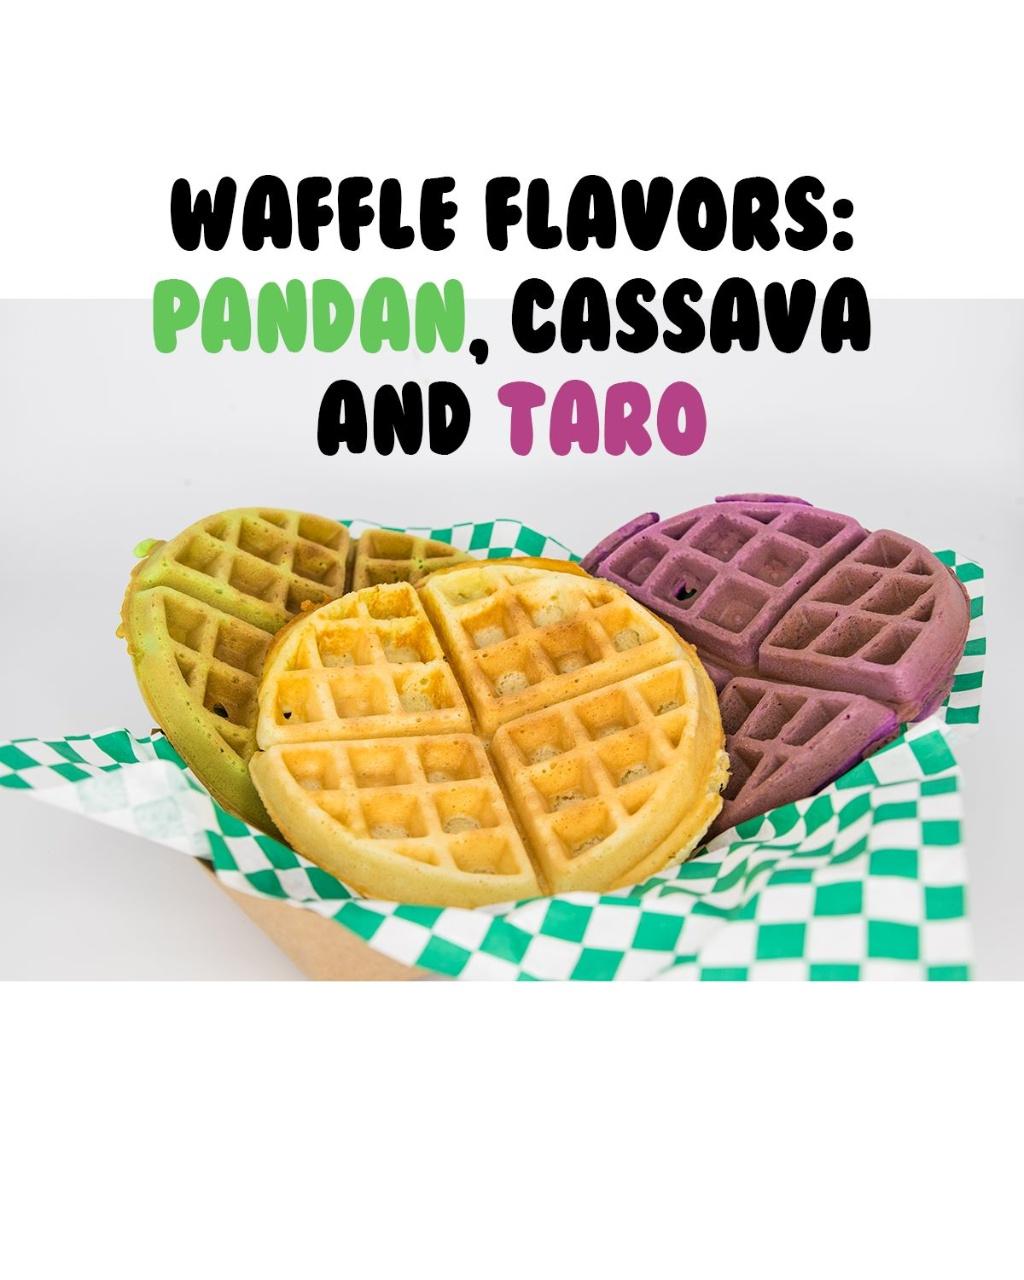 Pandon Waffle